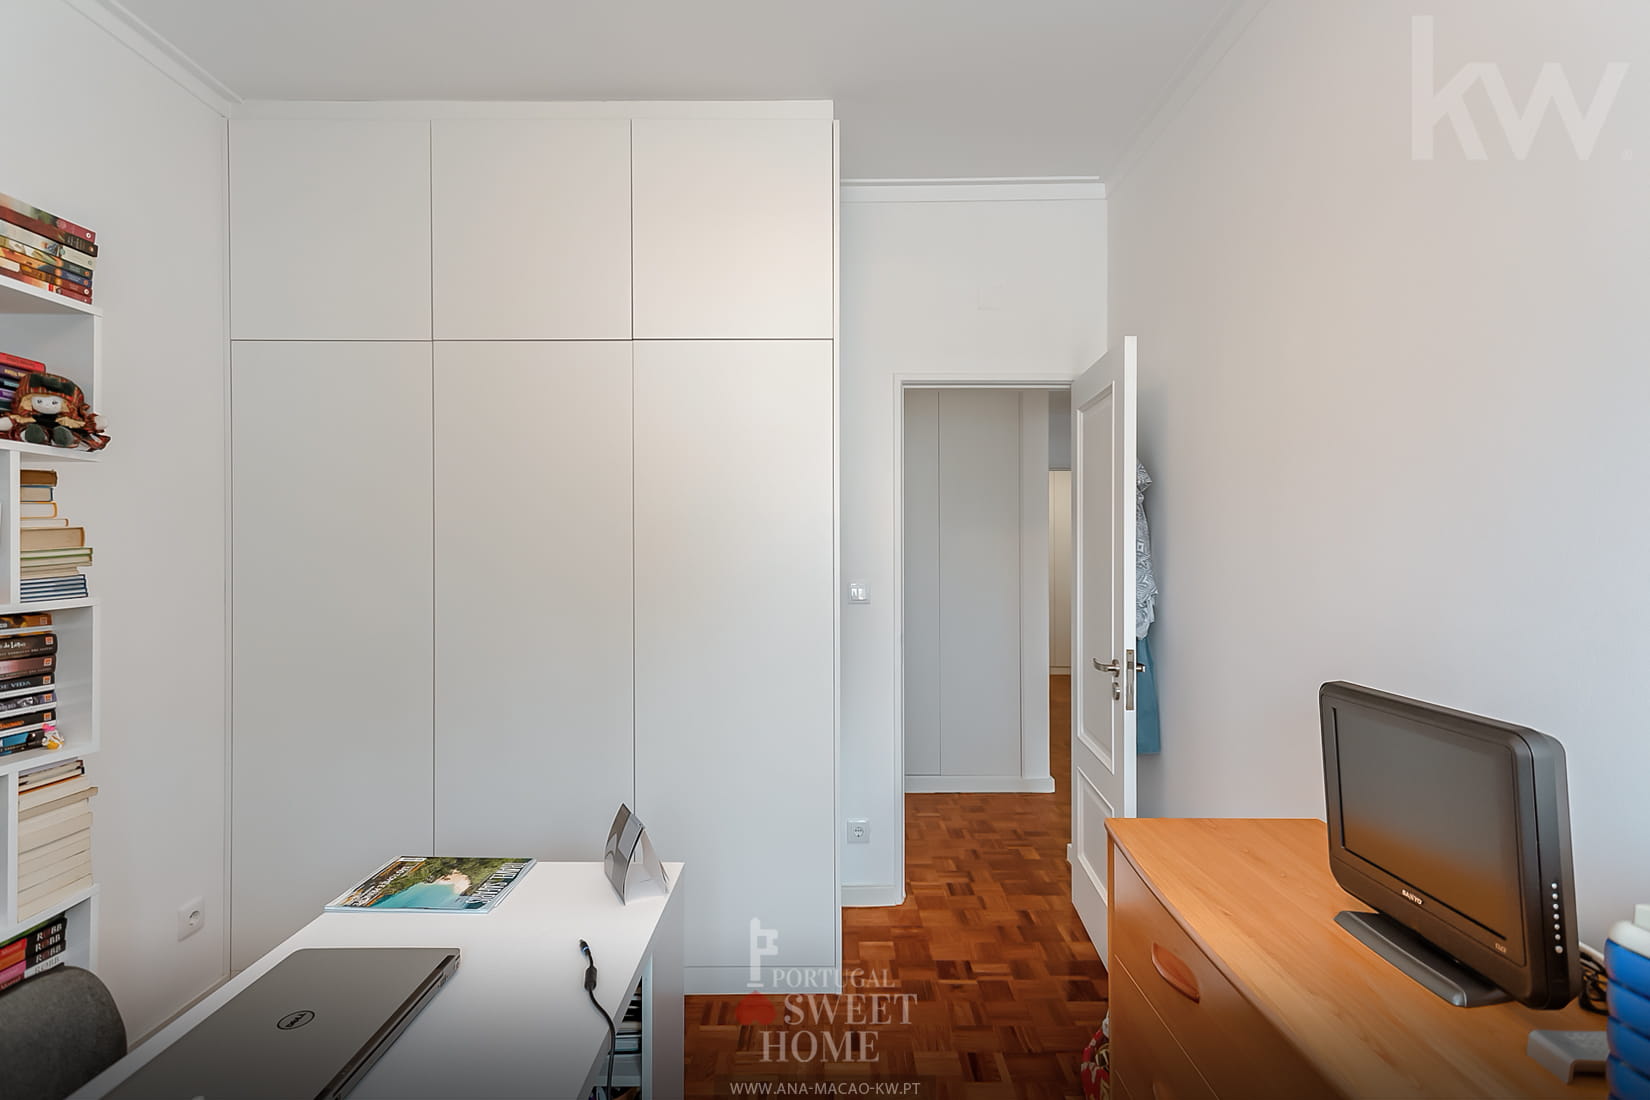 Second bedroom (10.9 m²)